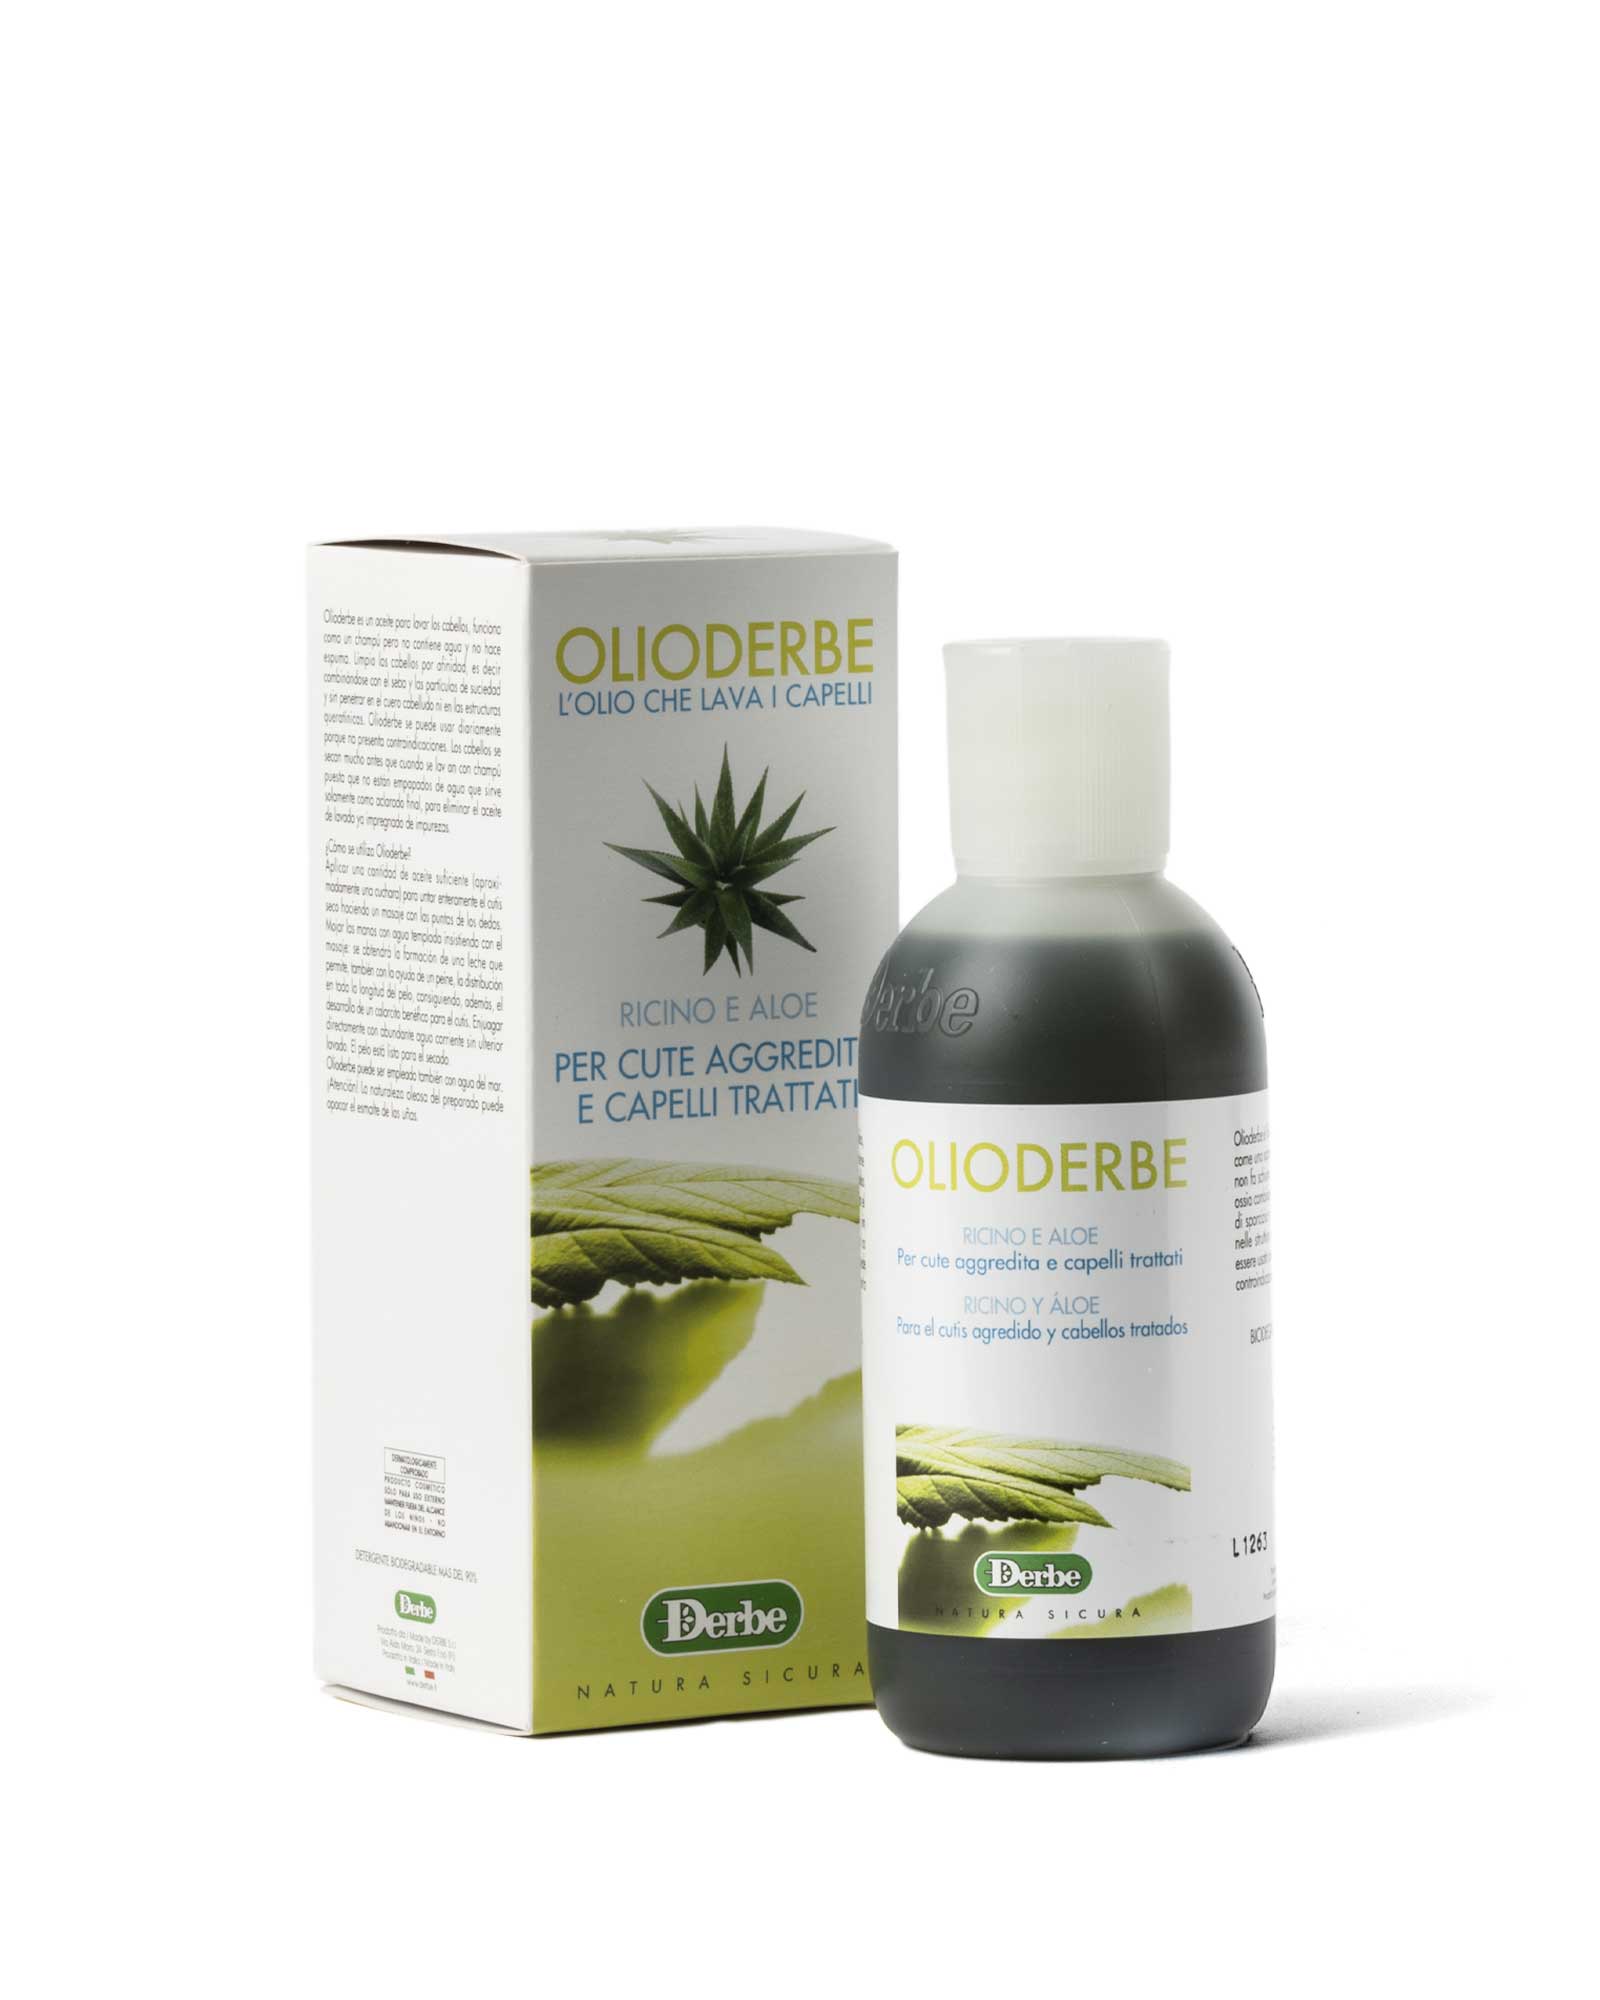 oilderbe-castor-aloe-skin-attacked-hair-treated-herbs